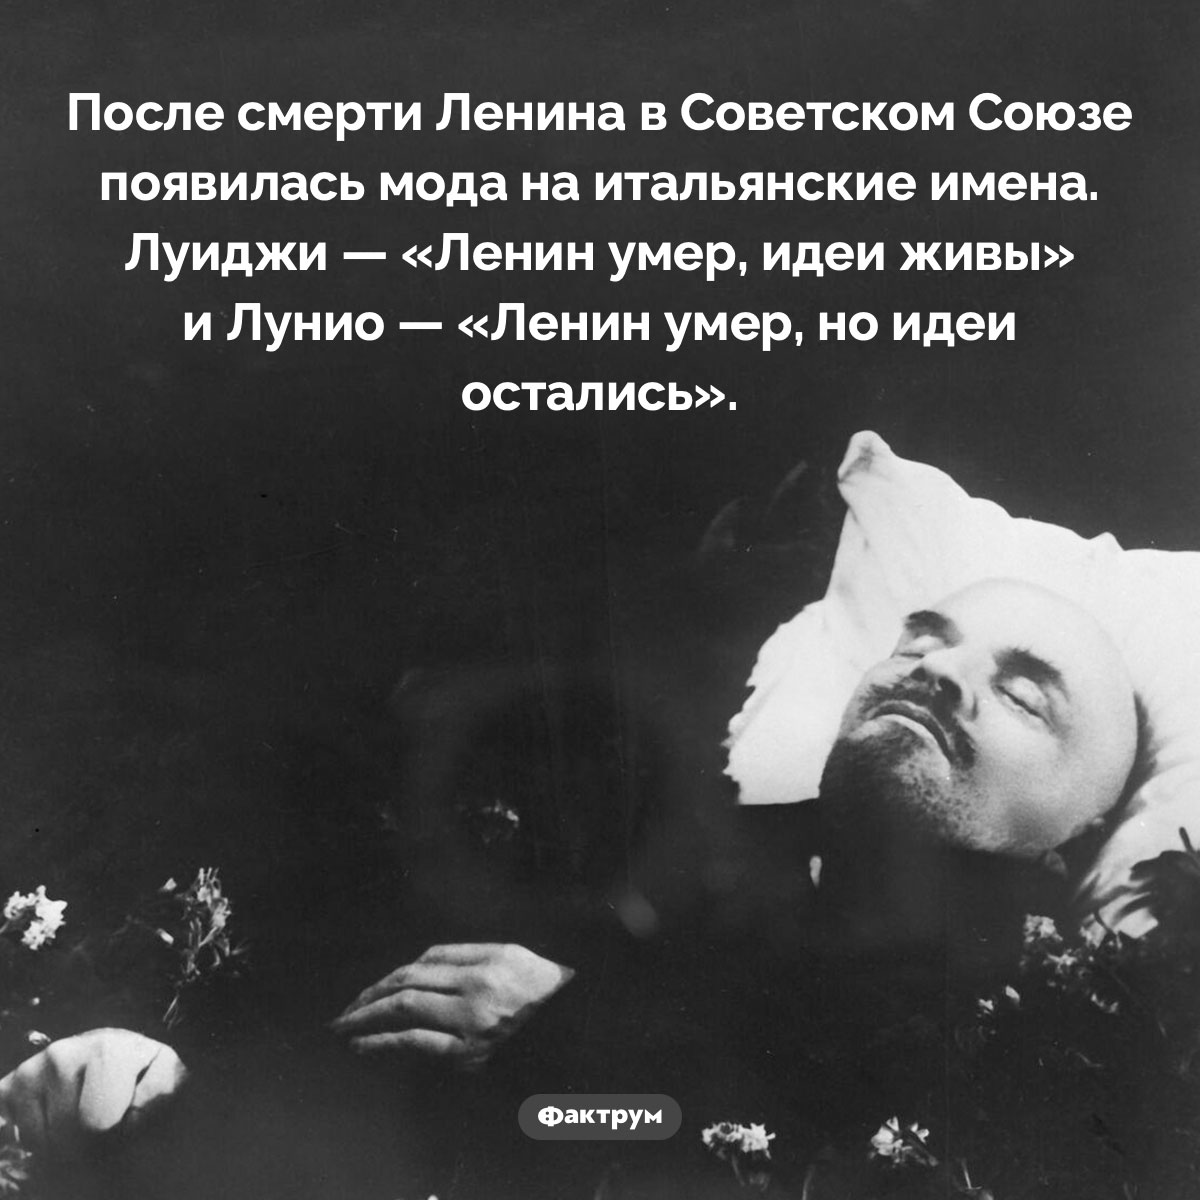 Смерть Ленина и мода на итальянские имена.  После смерти Ленина в Советском Союзе появилась мода на итальянские имена.  Луиджи - 